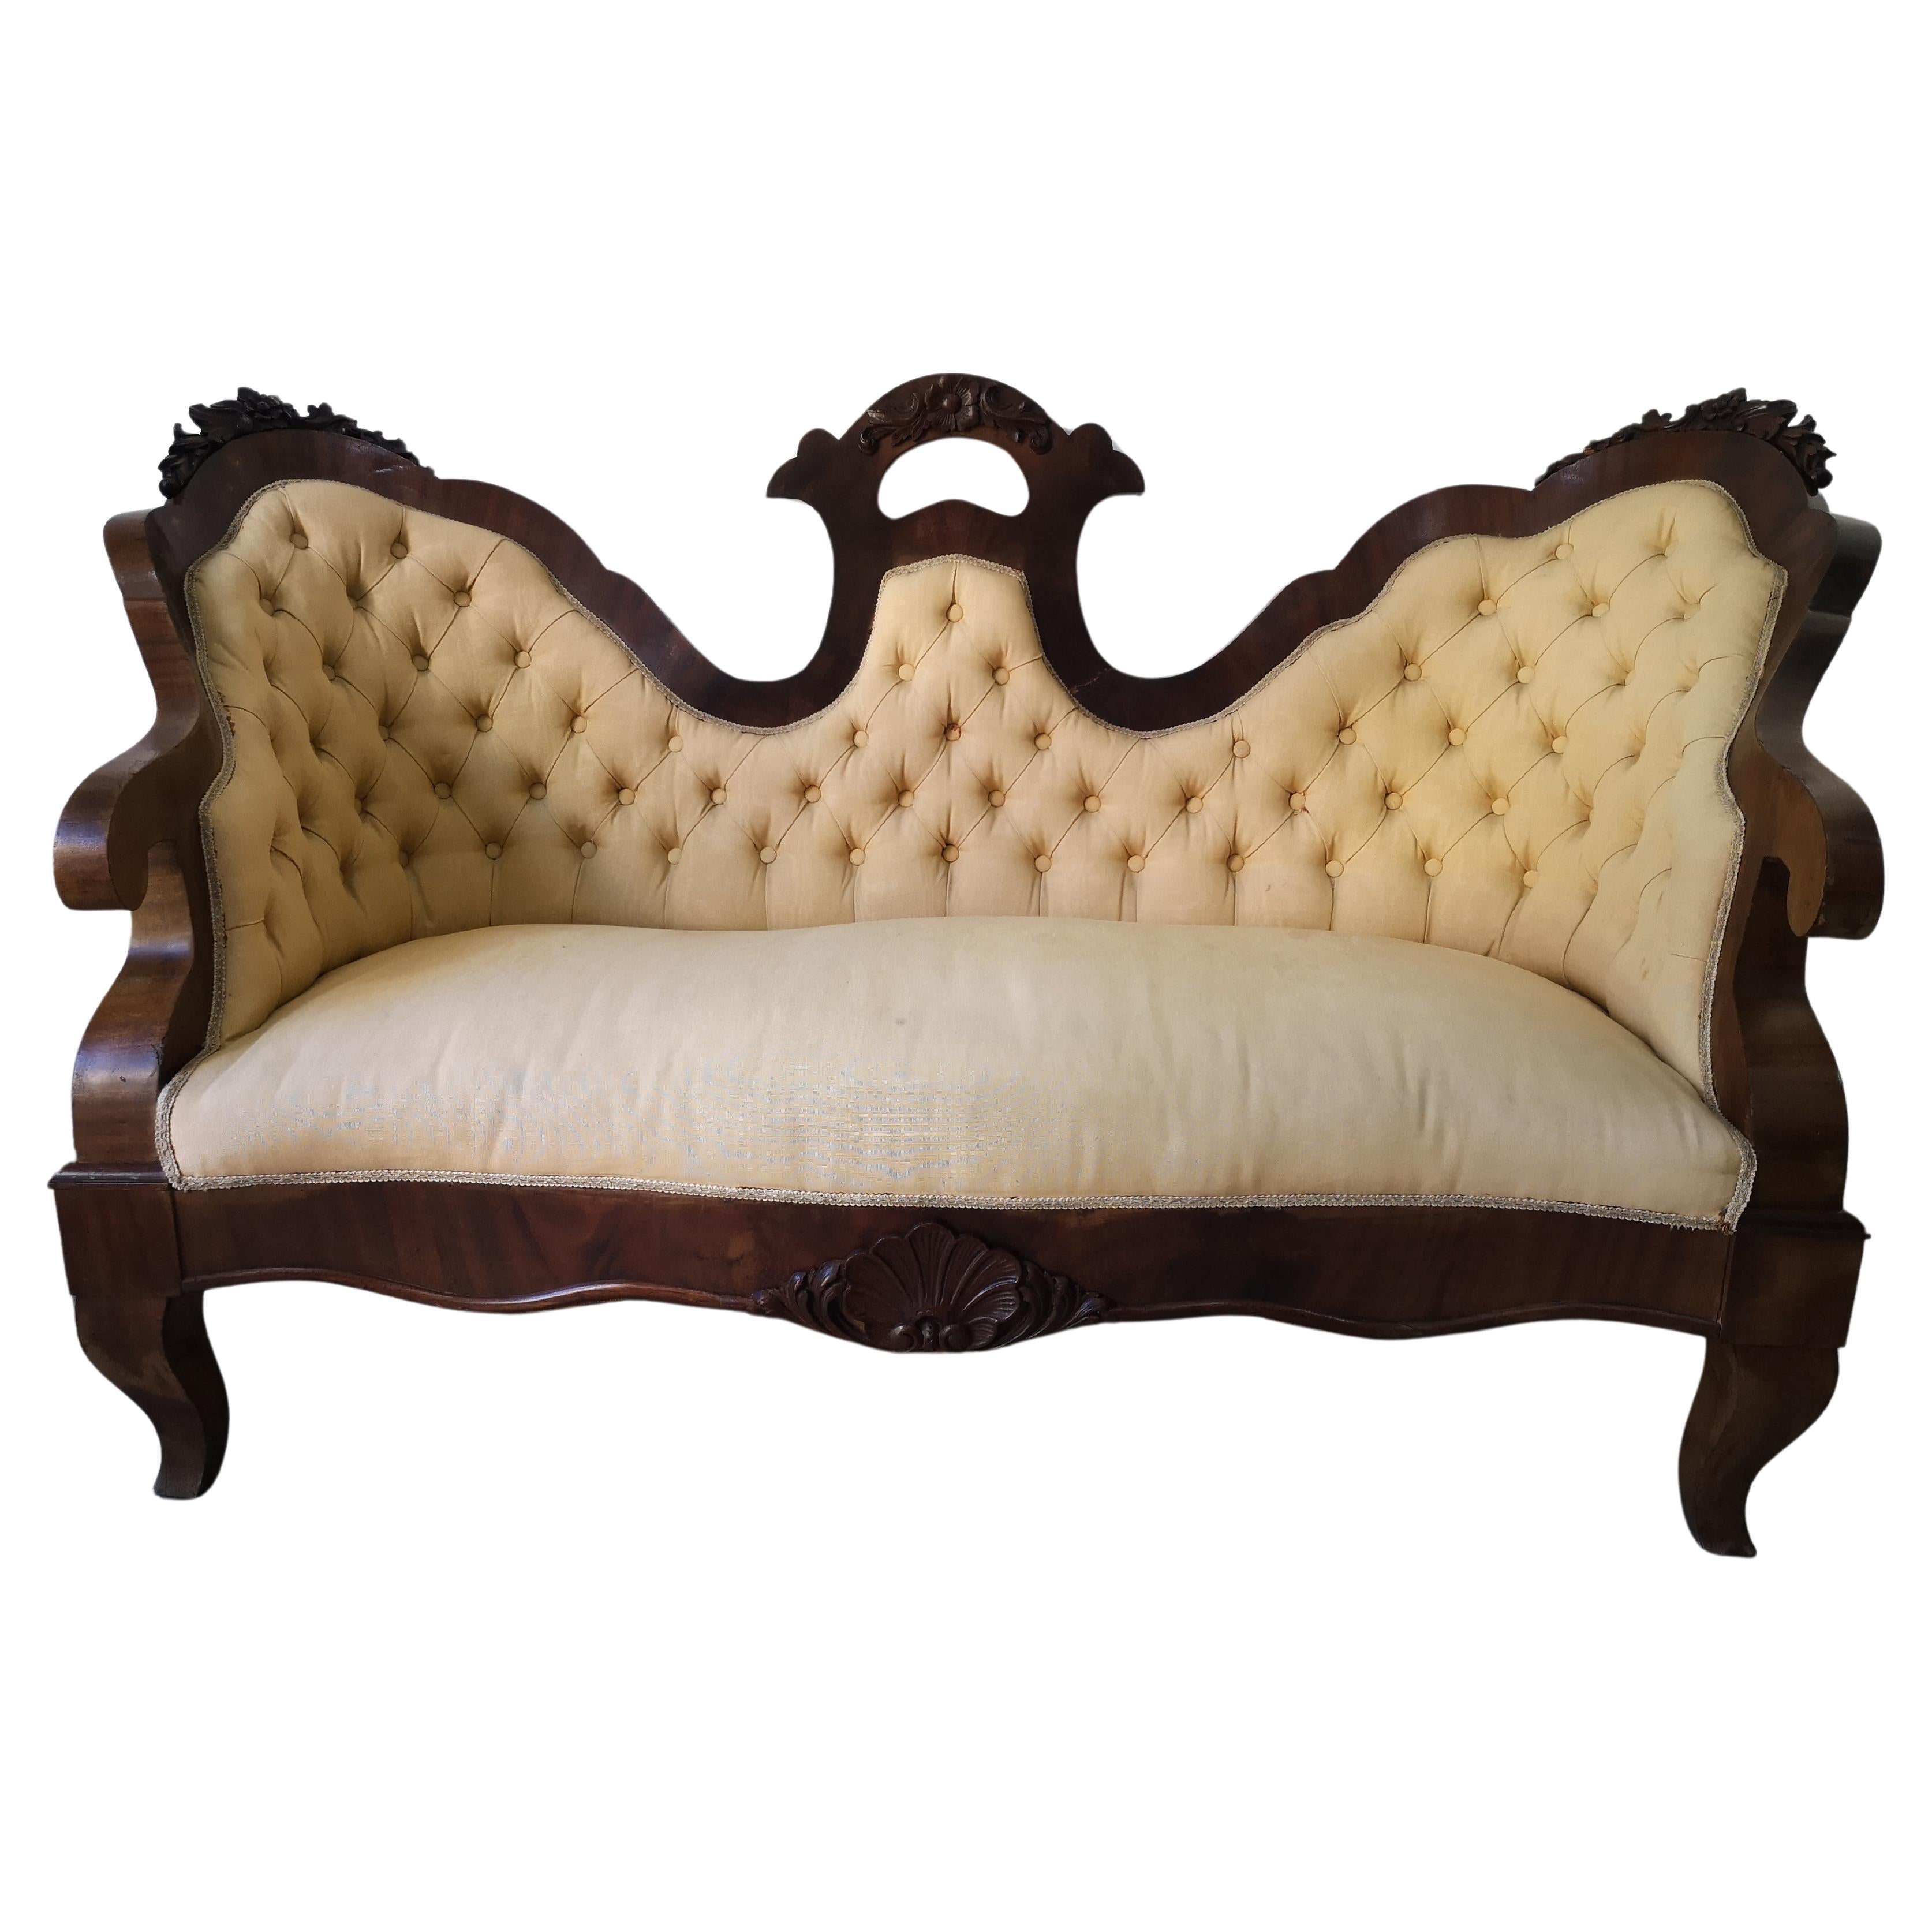 Zweisitziges Louis-Philippe-Sofa aus Nussbaum und Stoff, 19. Jahrhundert